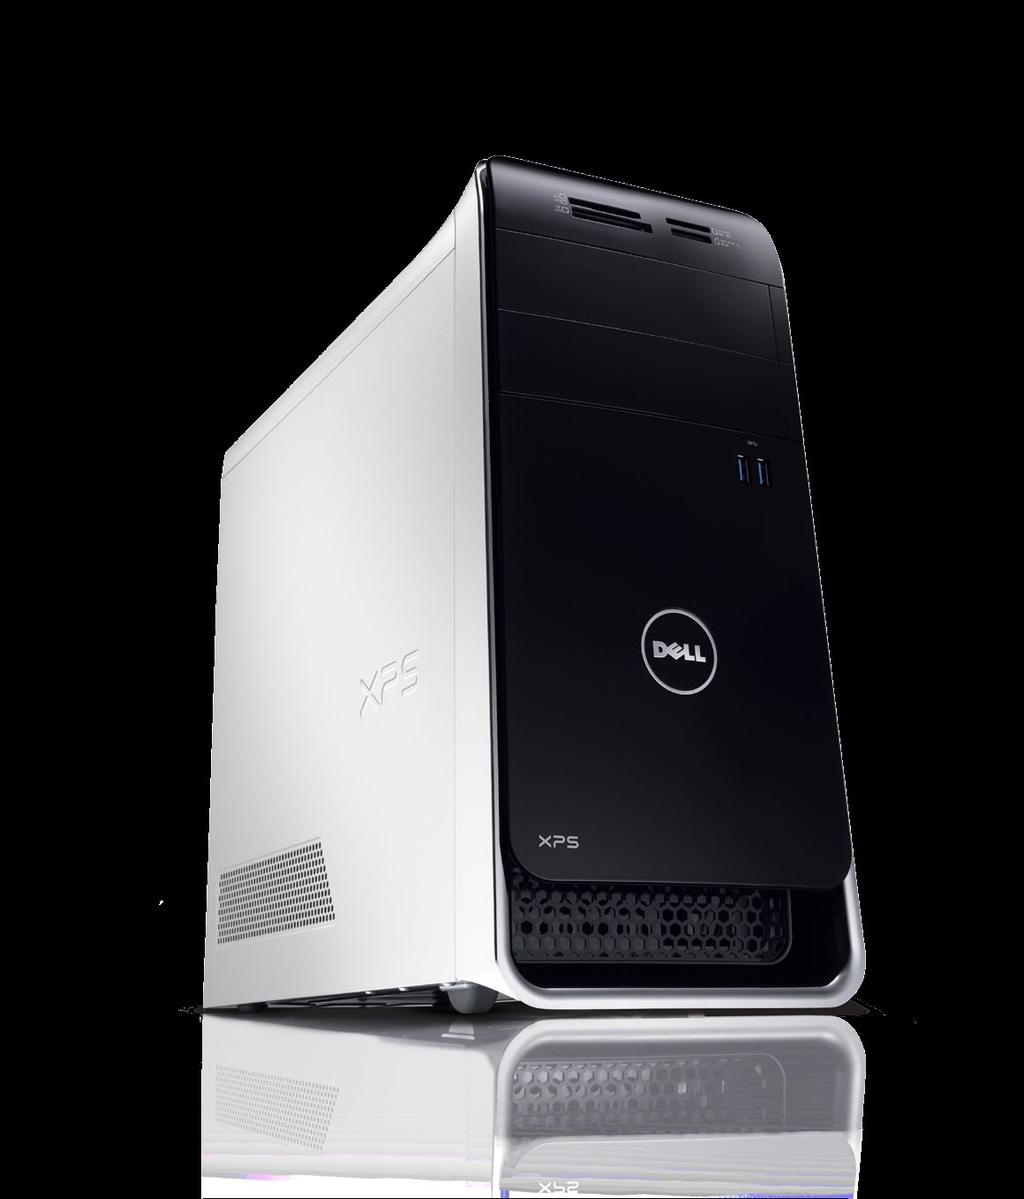 Desktopurile Dell XPS Dell XPS 8500 XPS 8500 este conceput pentru a le oferi clienţilor un impact multimedia de cea mai bună calitate, oferind soluţii grafice de înaltă performanţă, spaţiu de stocare